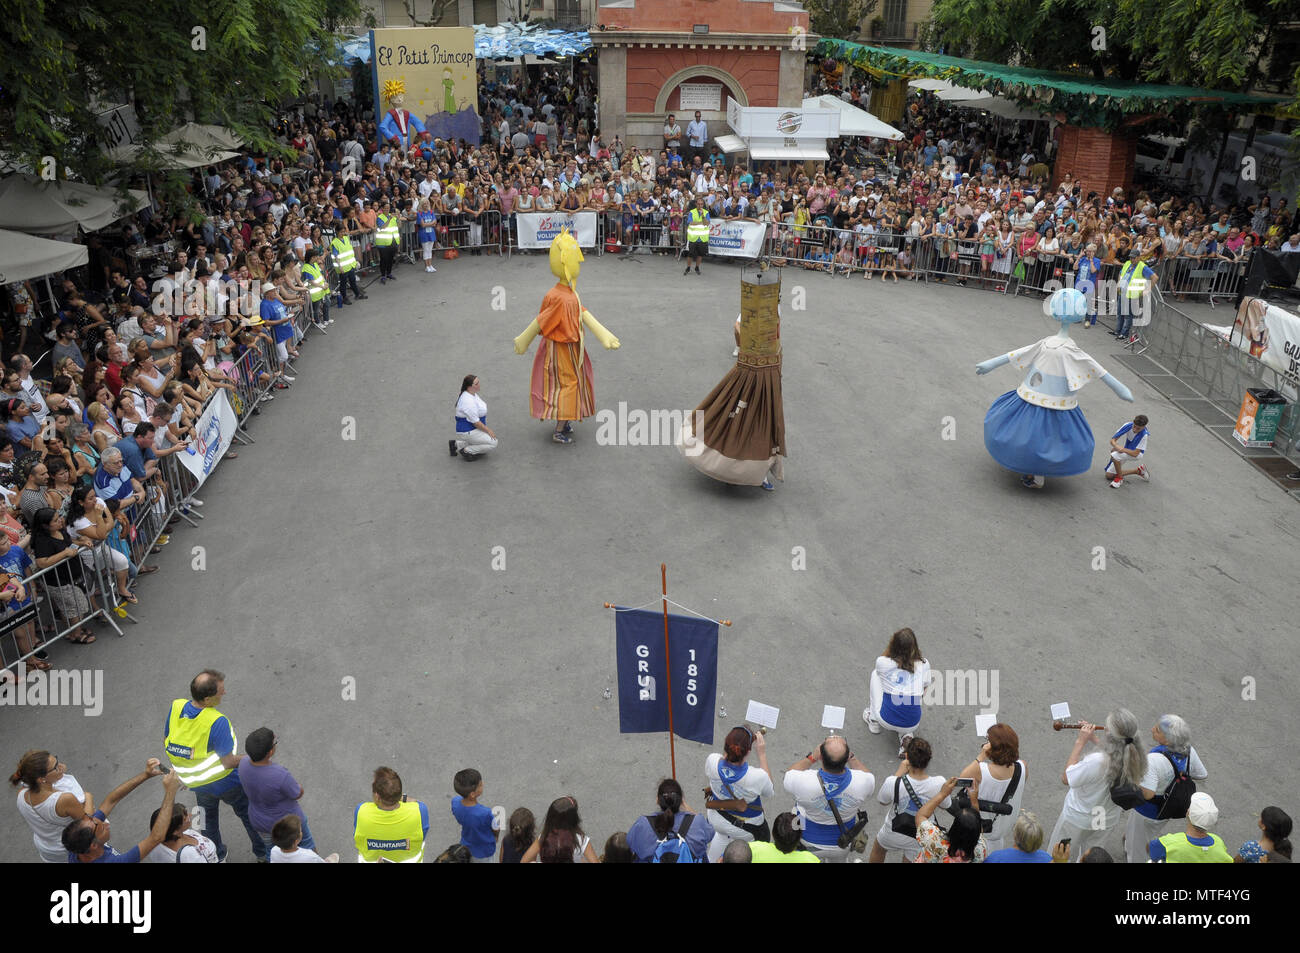 Riesen und große Köpfe tanzen WÄHREND GRACIA SUMMER FESTIVAL IN BARCELONA, UHR PLAZA. Foto: Rosmi Stockfoto